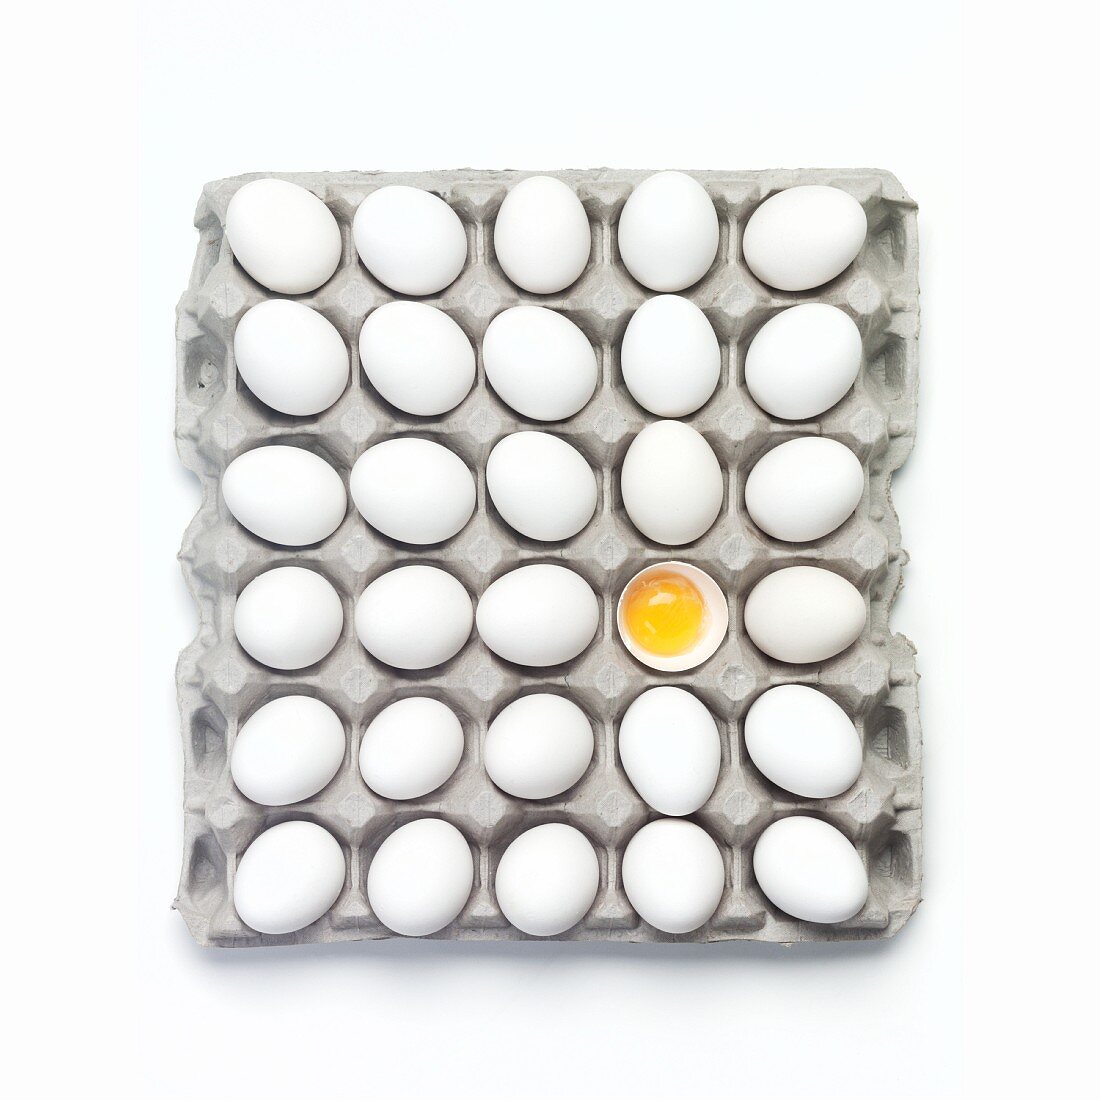 Eier im Eierkarton (eines davon aufgeschlagen)